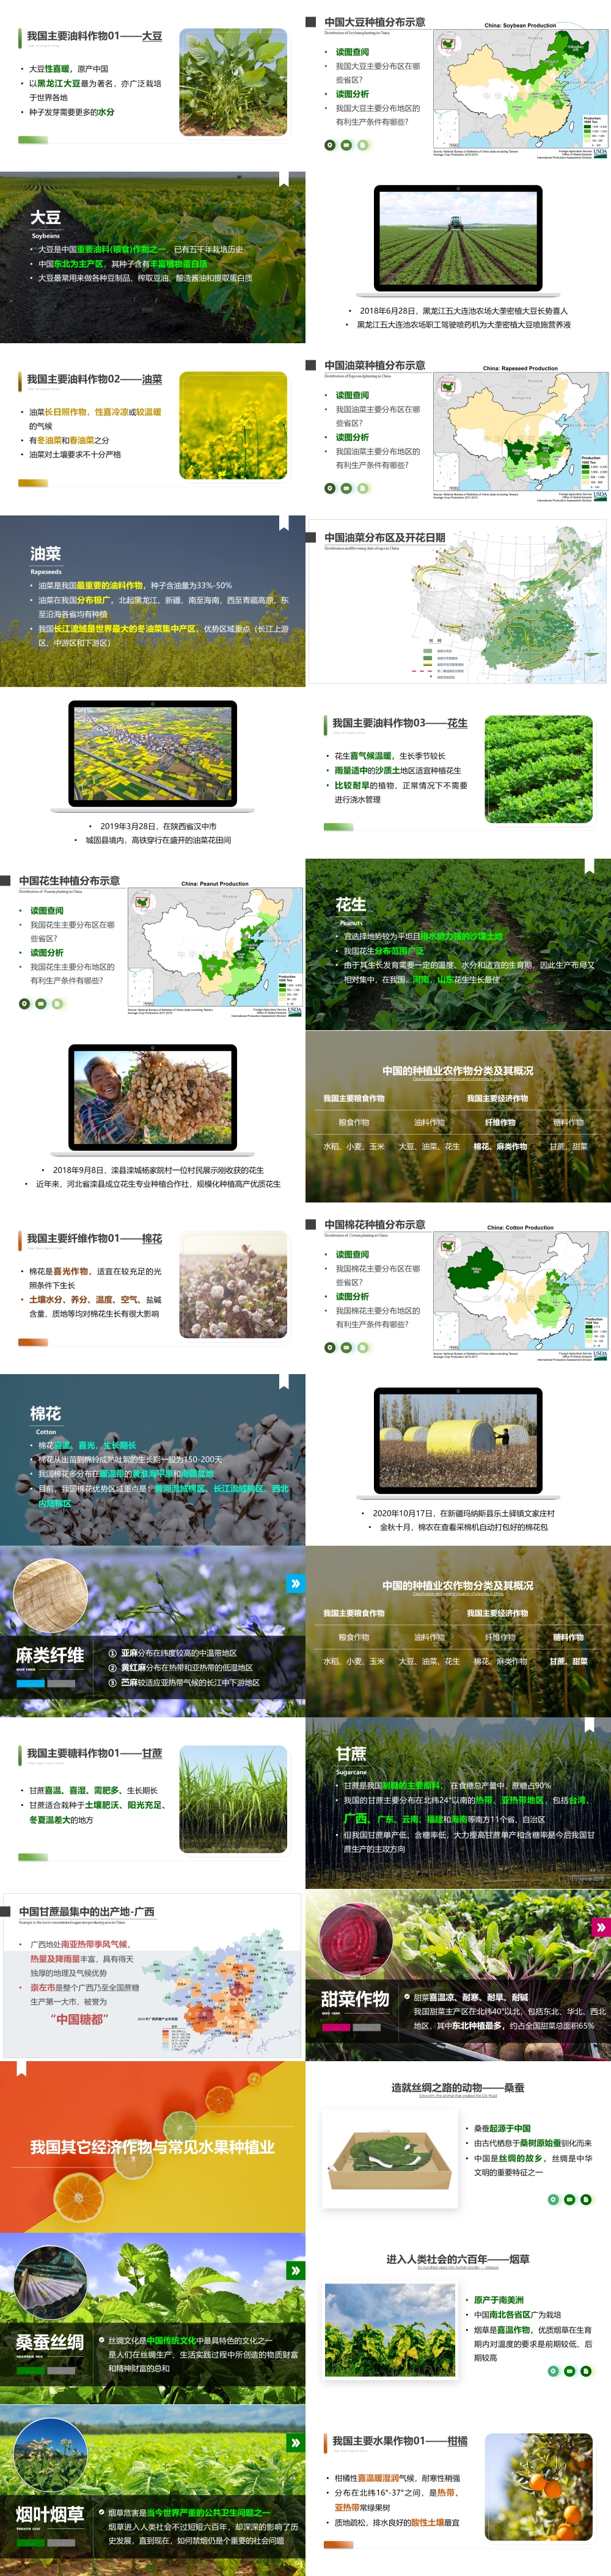 第07讲 中国的农业 [2021版]-1000px-02.jpg